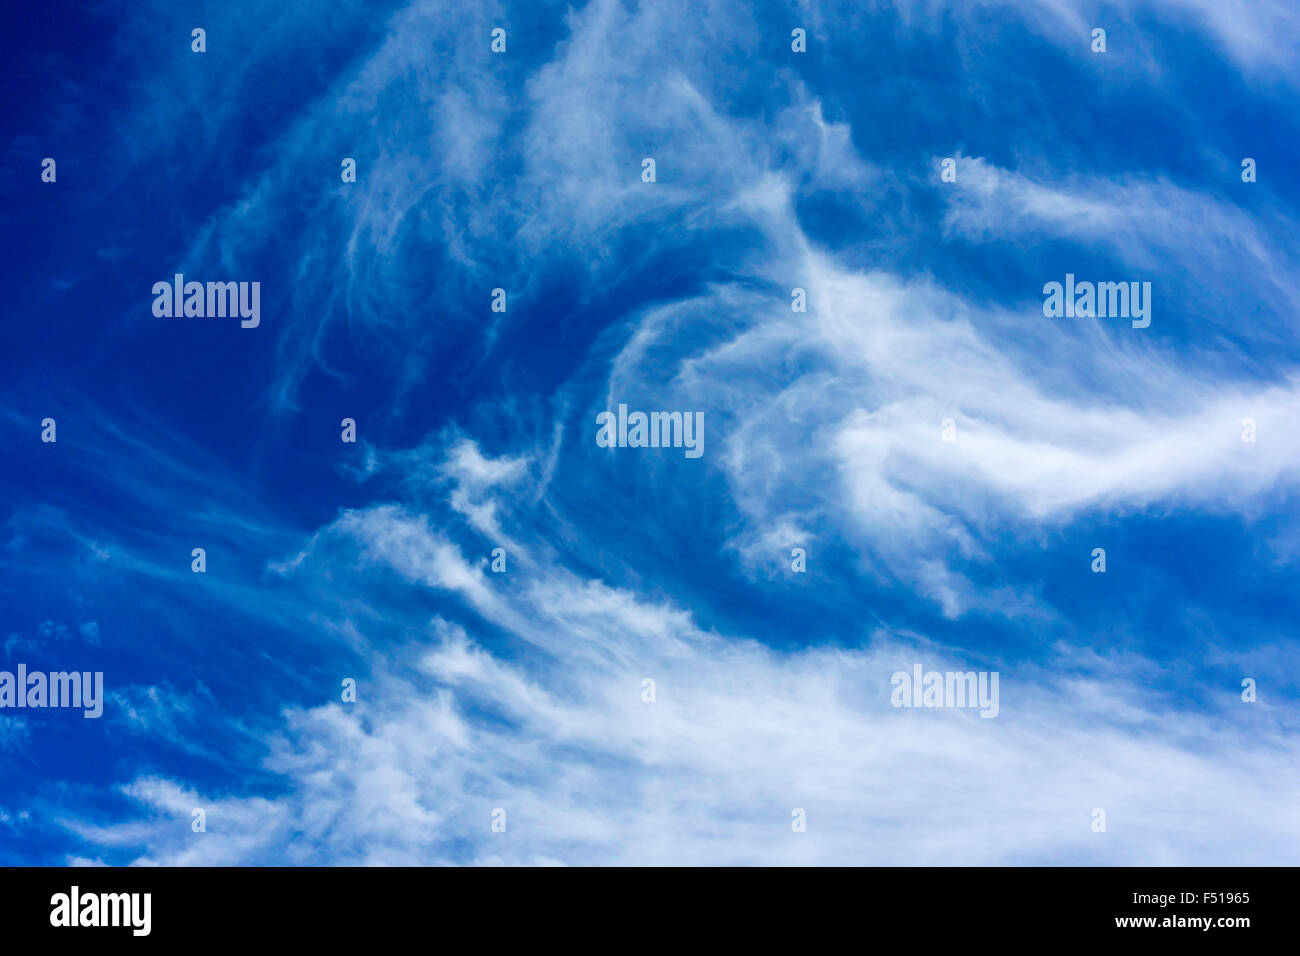 Meteorologie Jetstream Cirruswolken zeigen eine kräftige zyklonal Bedingung vorhanden ist, gegen den Wind und Stürme können bald kommen Stockfoto